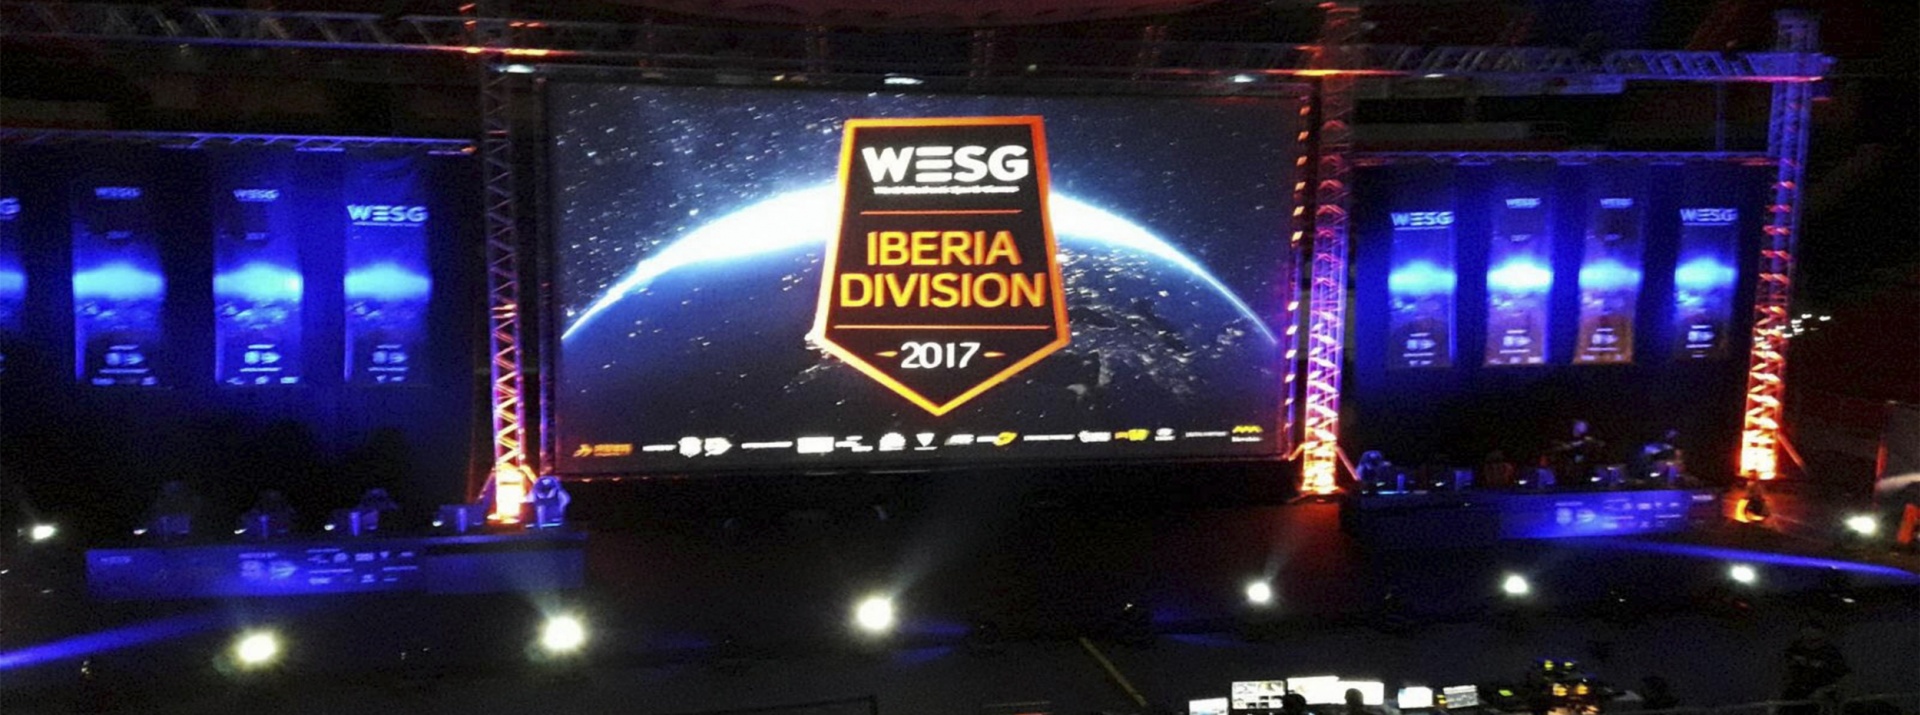 WESG - IBERIA DIVISION 2017